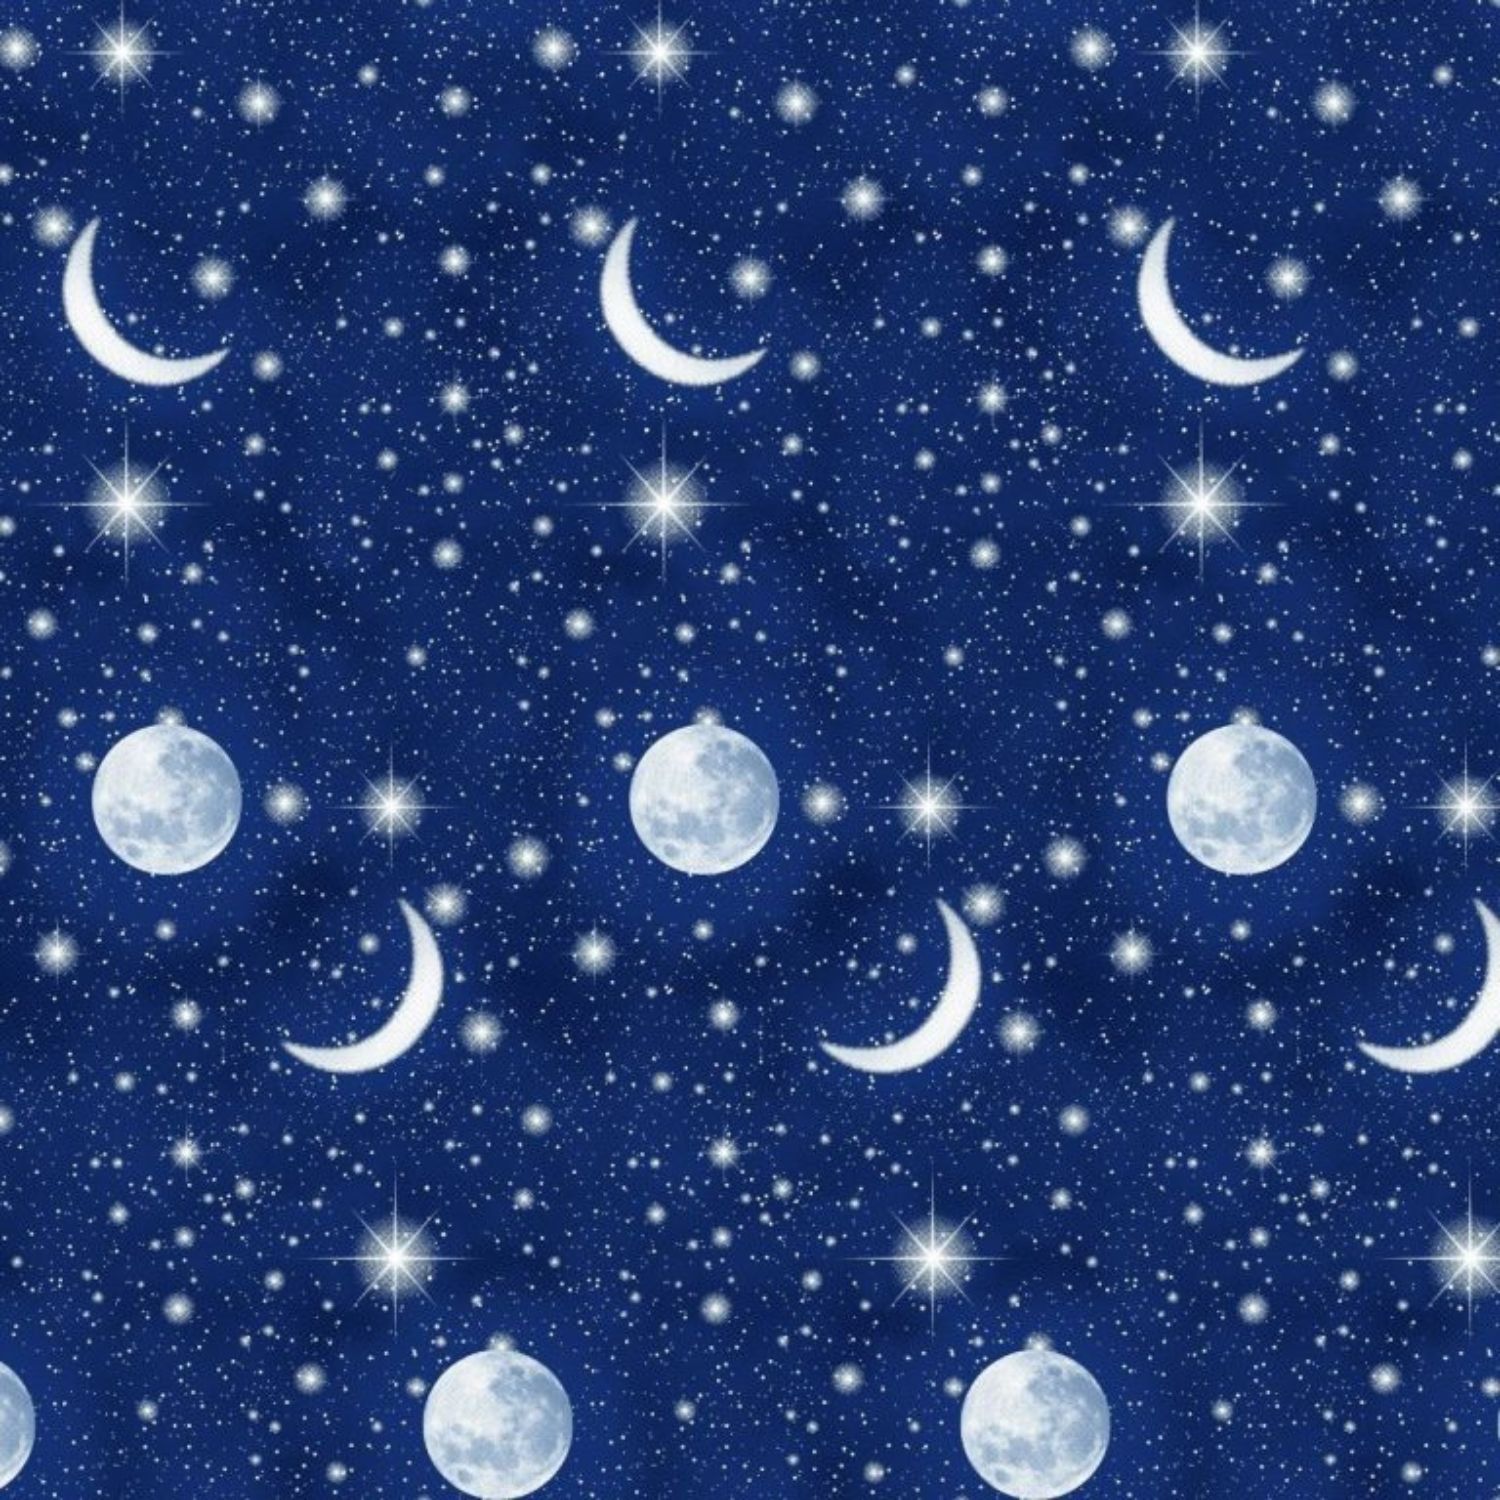 completo-lenzuola-moon-fantasia-cielo-stellato-luna-stelle-dettaglio